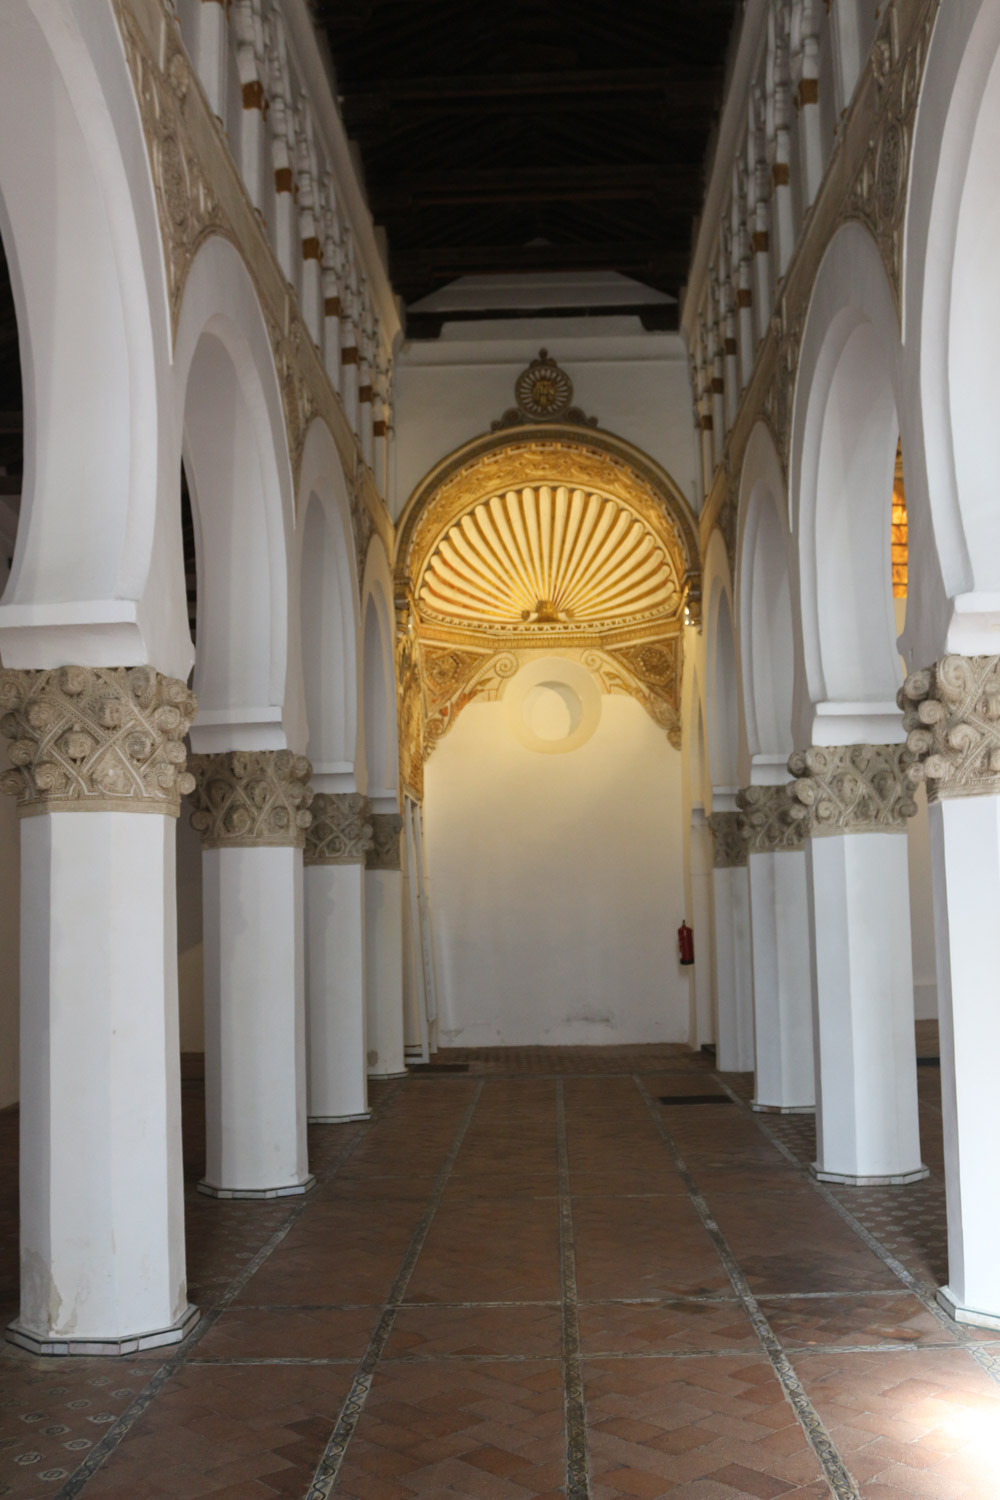 Santa María la Blanca heißt die ehemalige Synagoge Ibn Shushan in der spanischen Stadt Toledo. Die zu einer katholischen Kirche umgewandelte Synagoge dient heute als Museum.
Die in ihrem Äußeren völlig unscheinbare ehemalige Synagoge wurde aus Ziegel- und Bruchsteinen im Mudéjar-Stil erbaut. Erst im Innern zeigt sich der Glanz ihrer Architektur: Wände und Pfeiler sind zur Gänze verputzt, in den höheren Wandsegmenten finden sich eingestellte Säulchen und reichhaltiges geometrisches Stuckdekor.